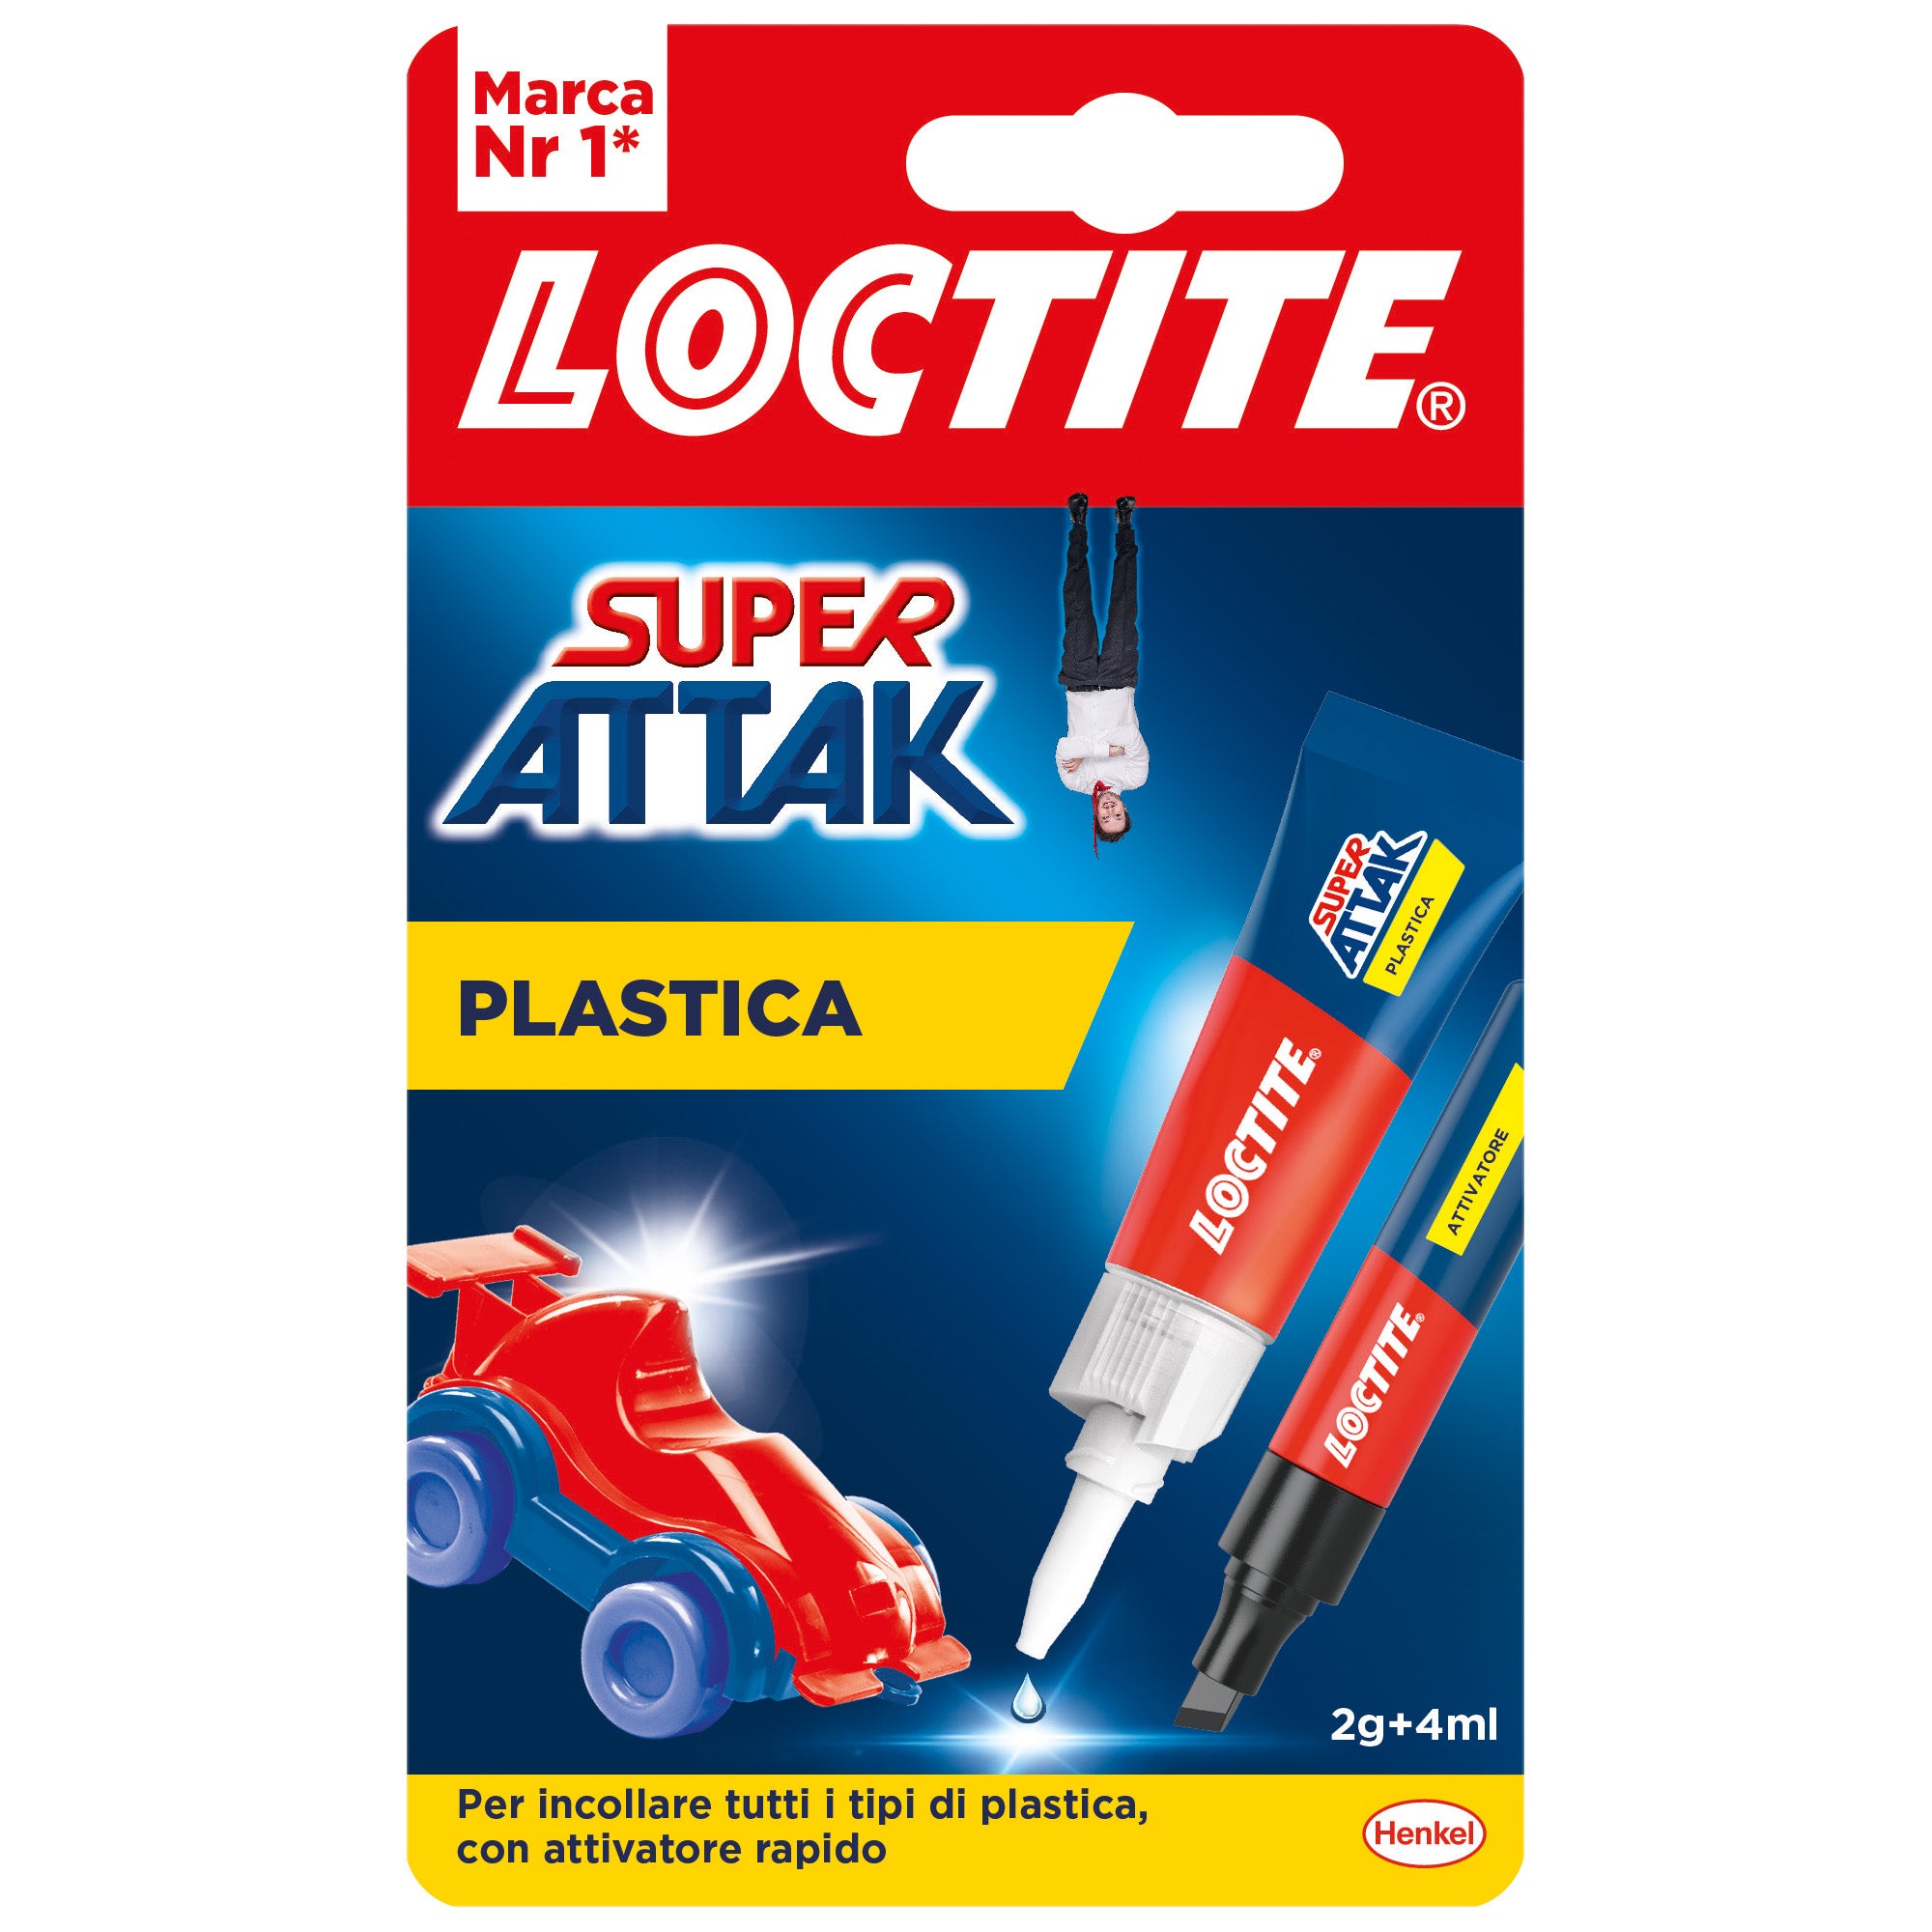 loctite-super-attak-plastica-2g4ml